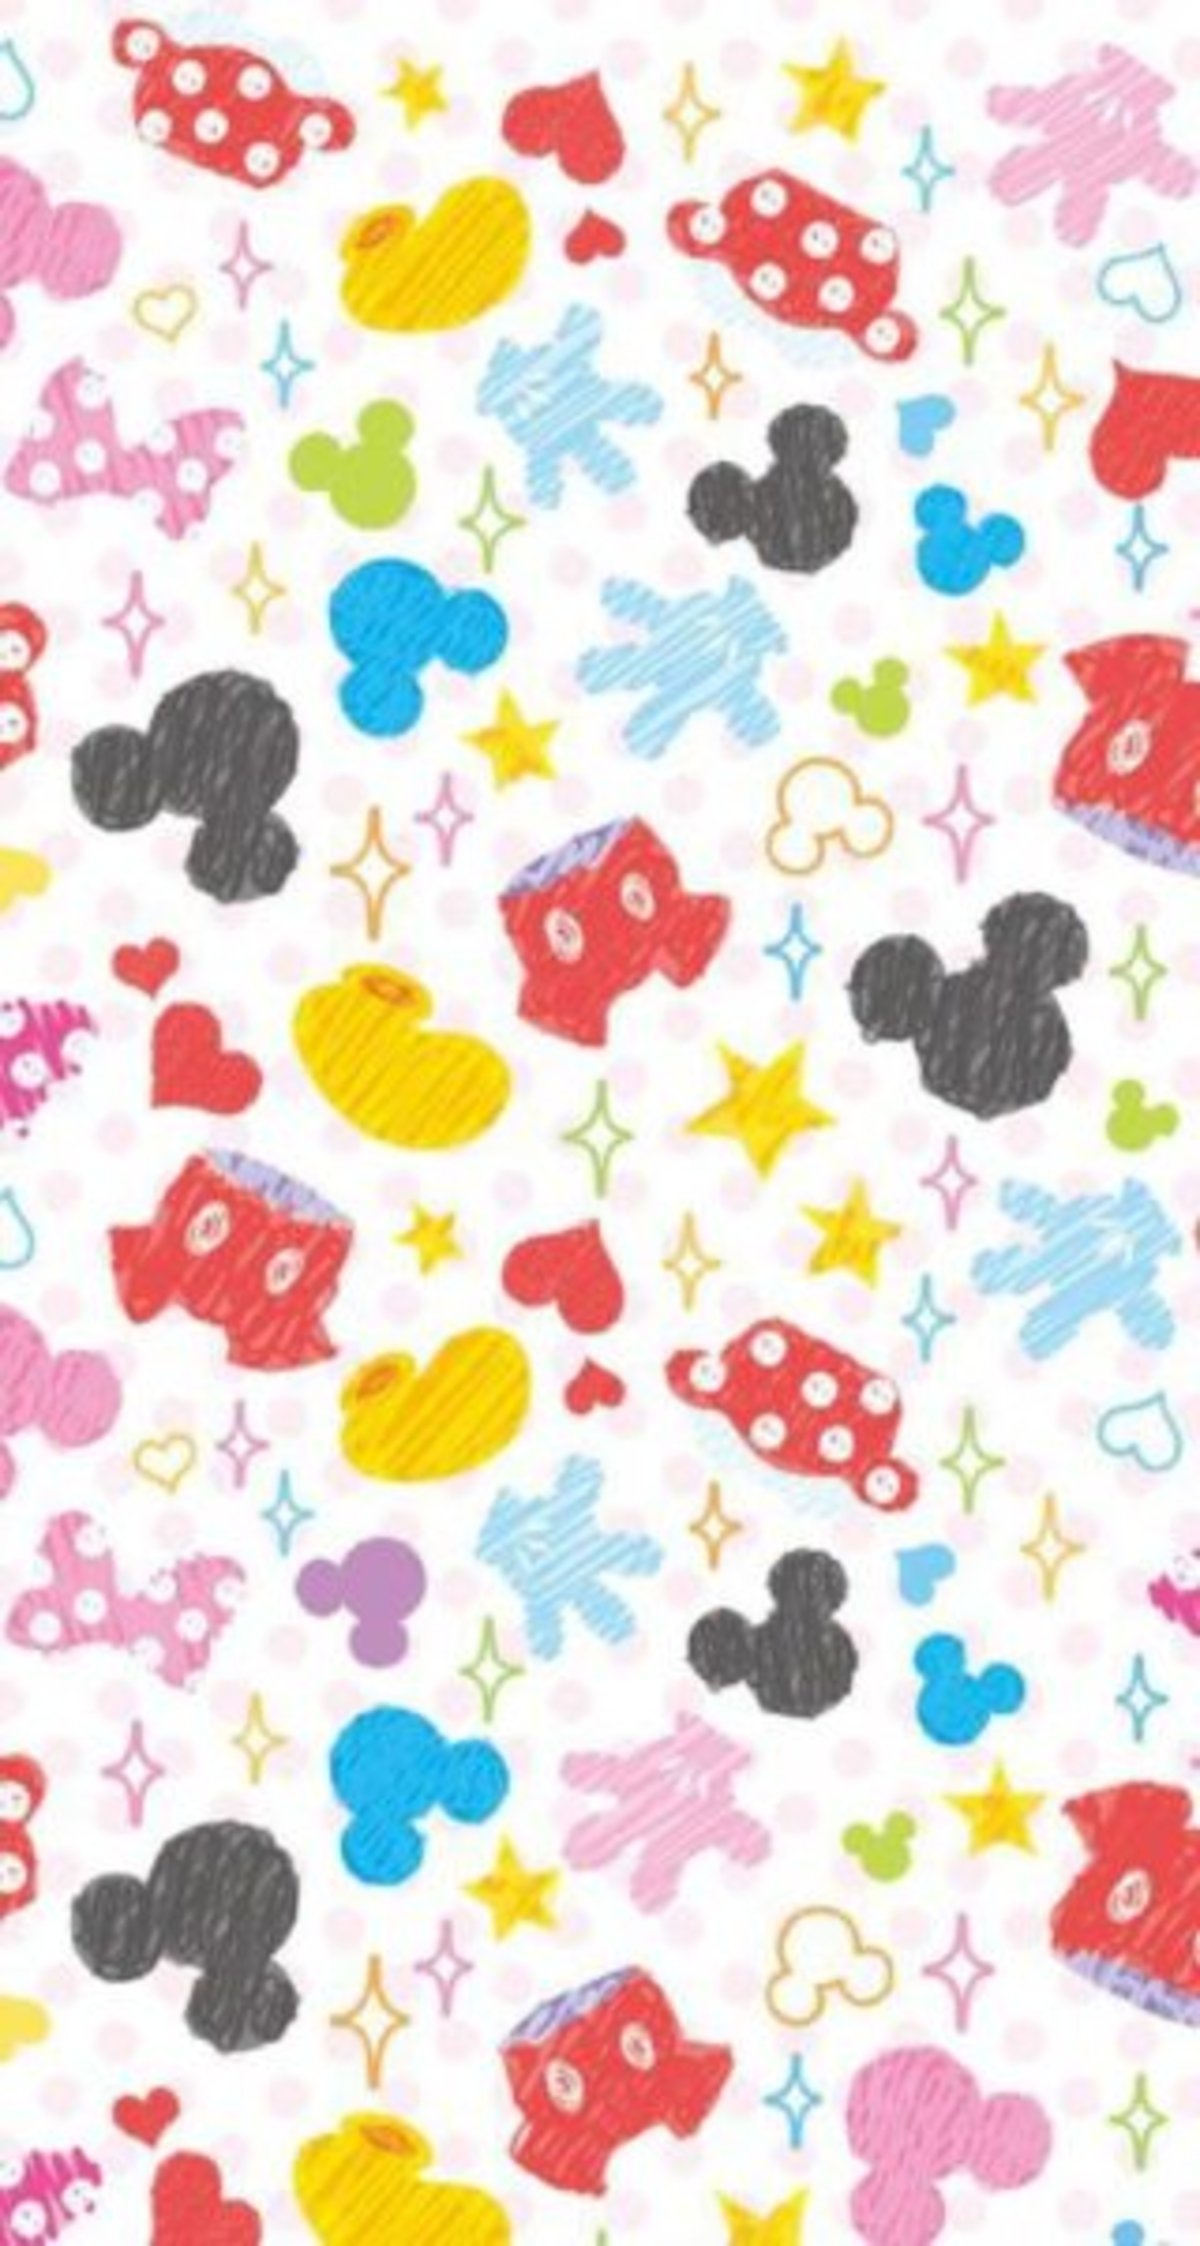 Descarga los mejores wallpapers de Disney para iPhone